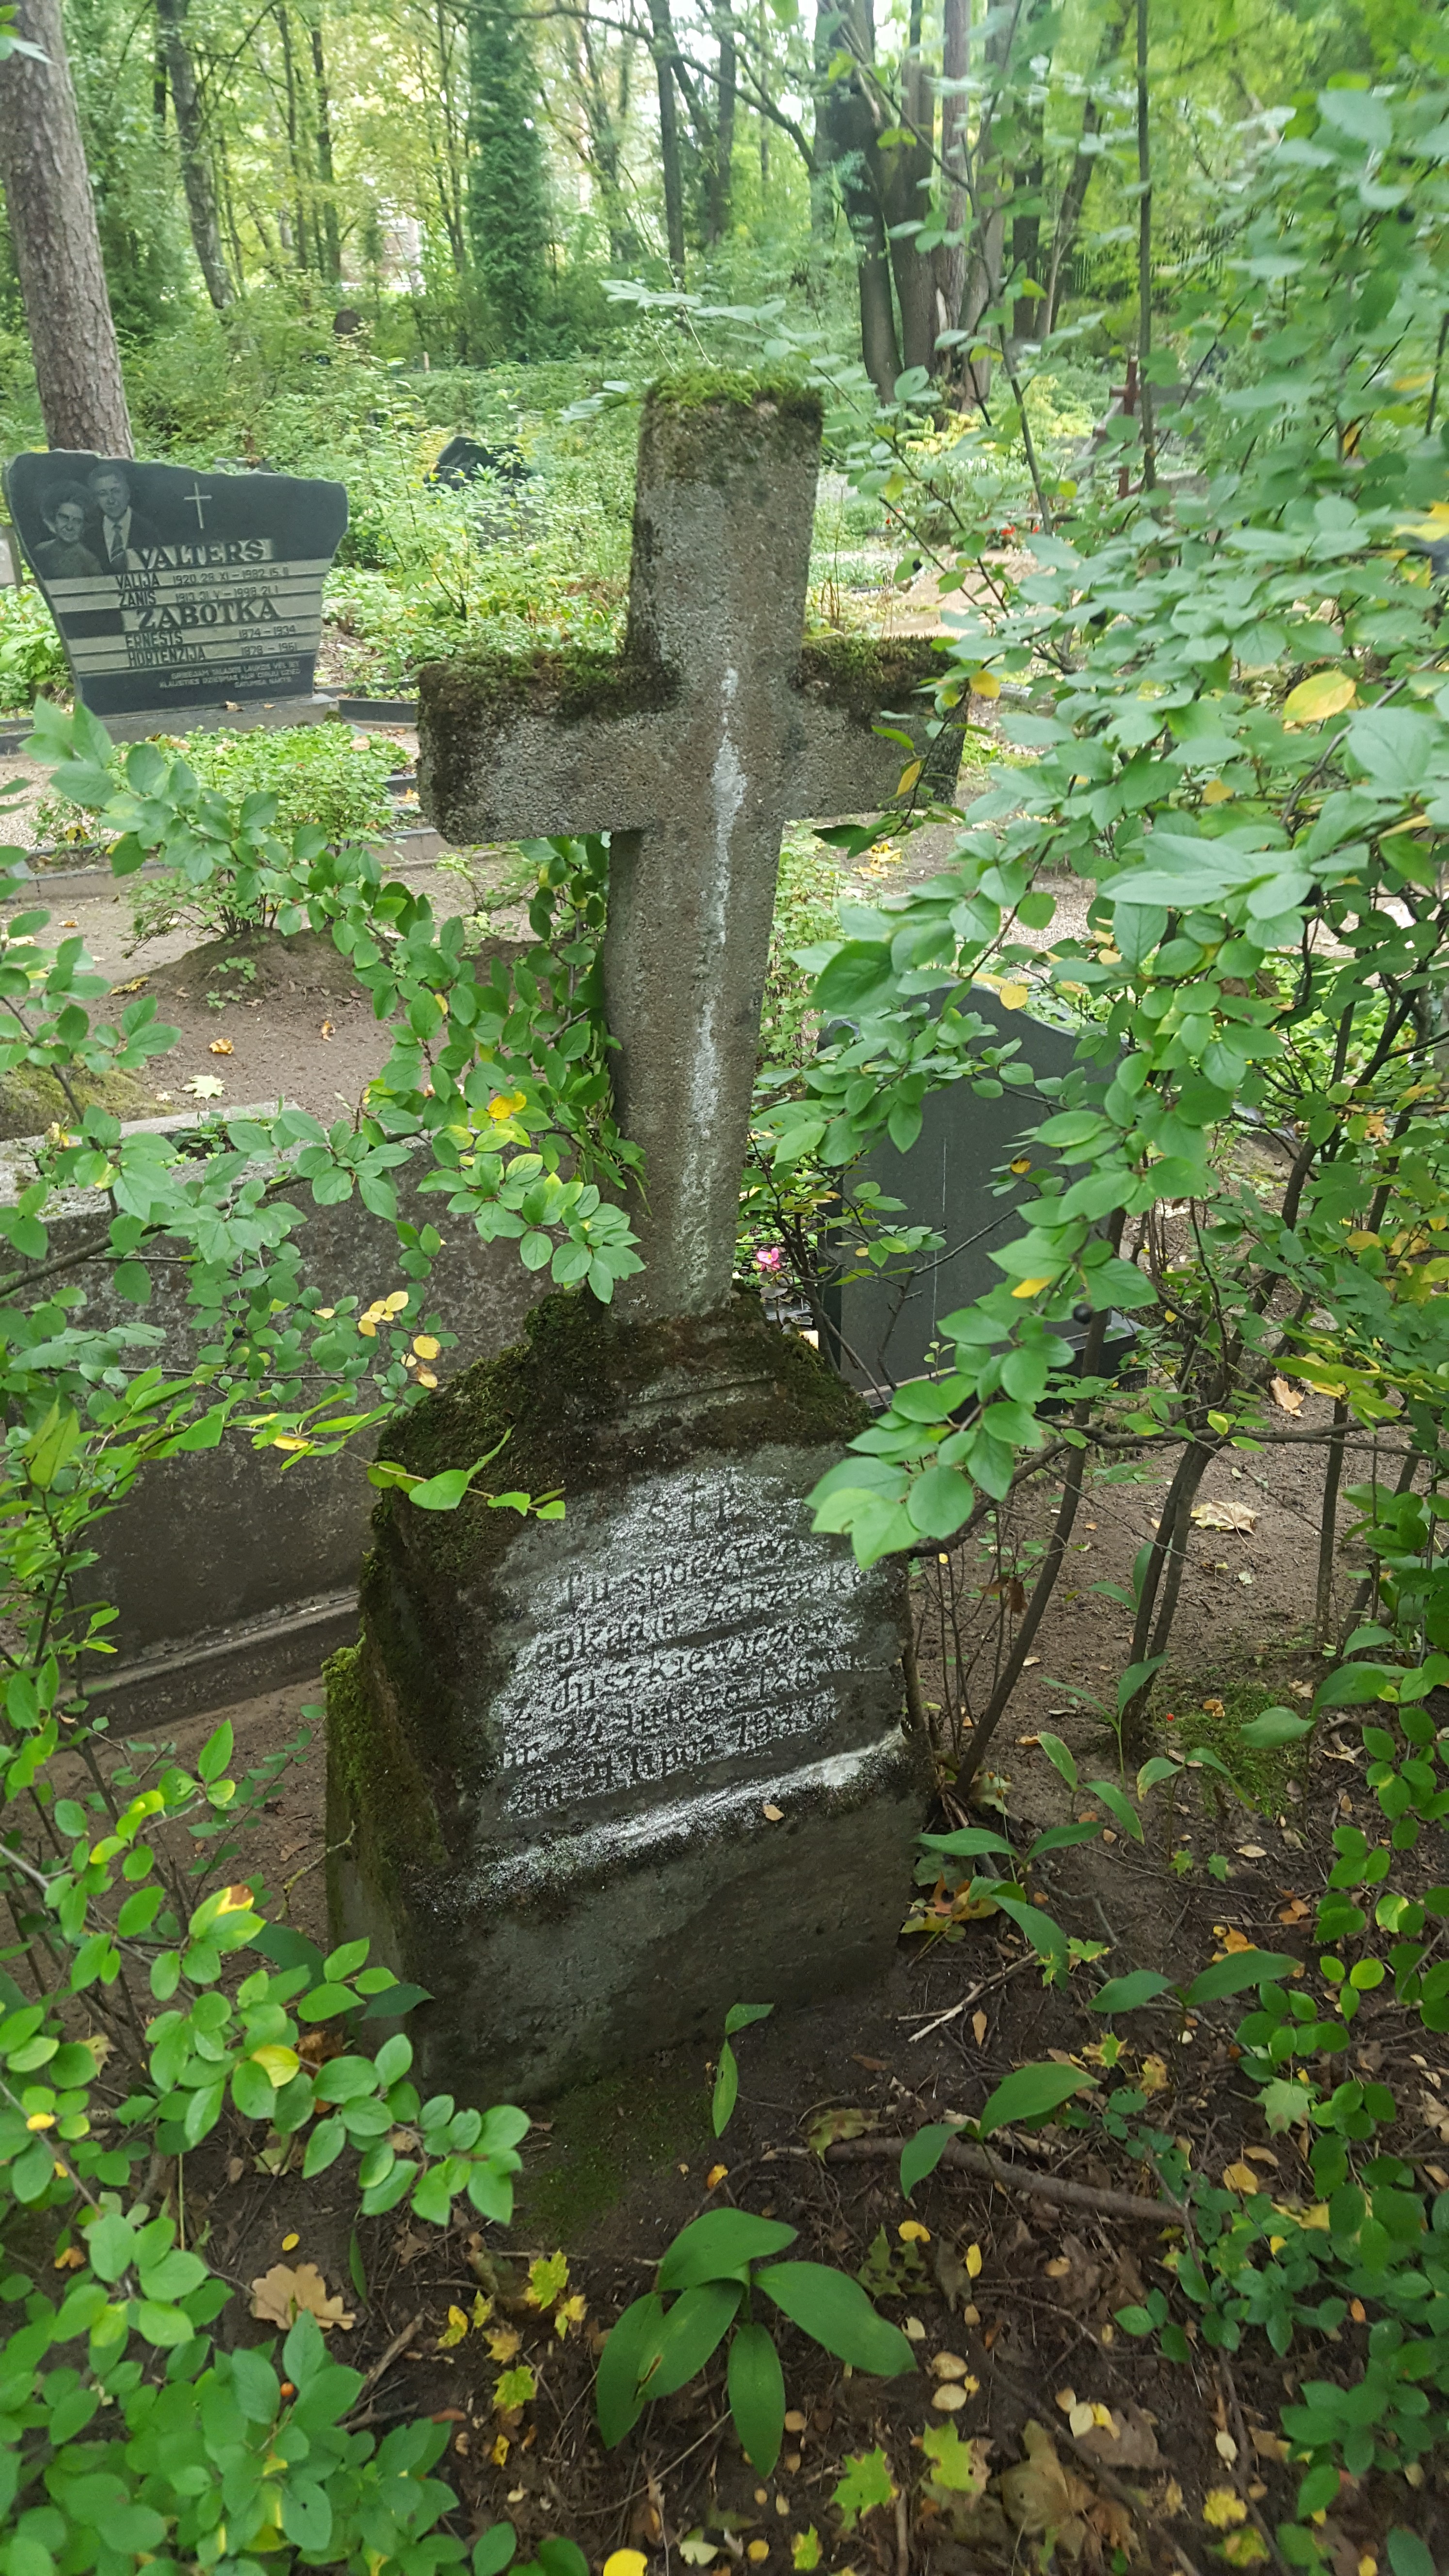 Tombstone of Leokadia Zarzecka and Kazimierz Zarzecki